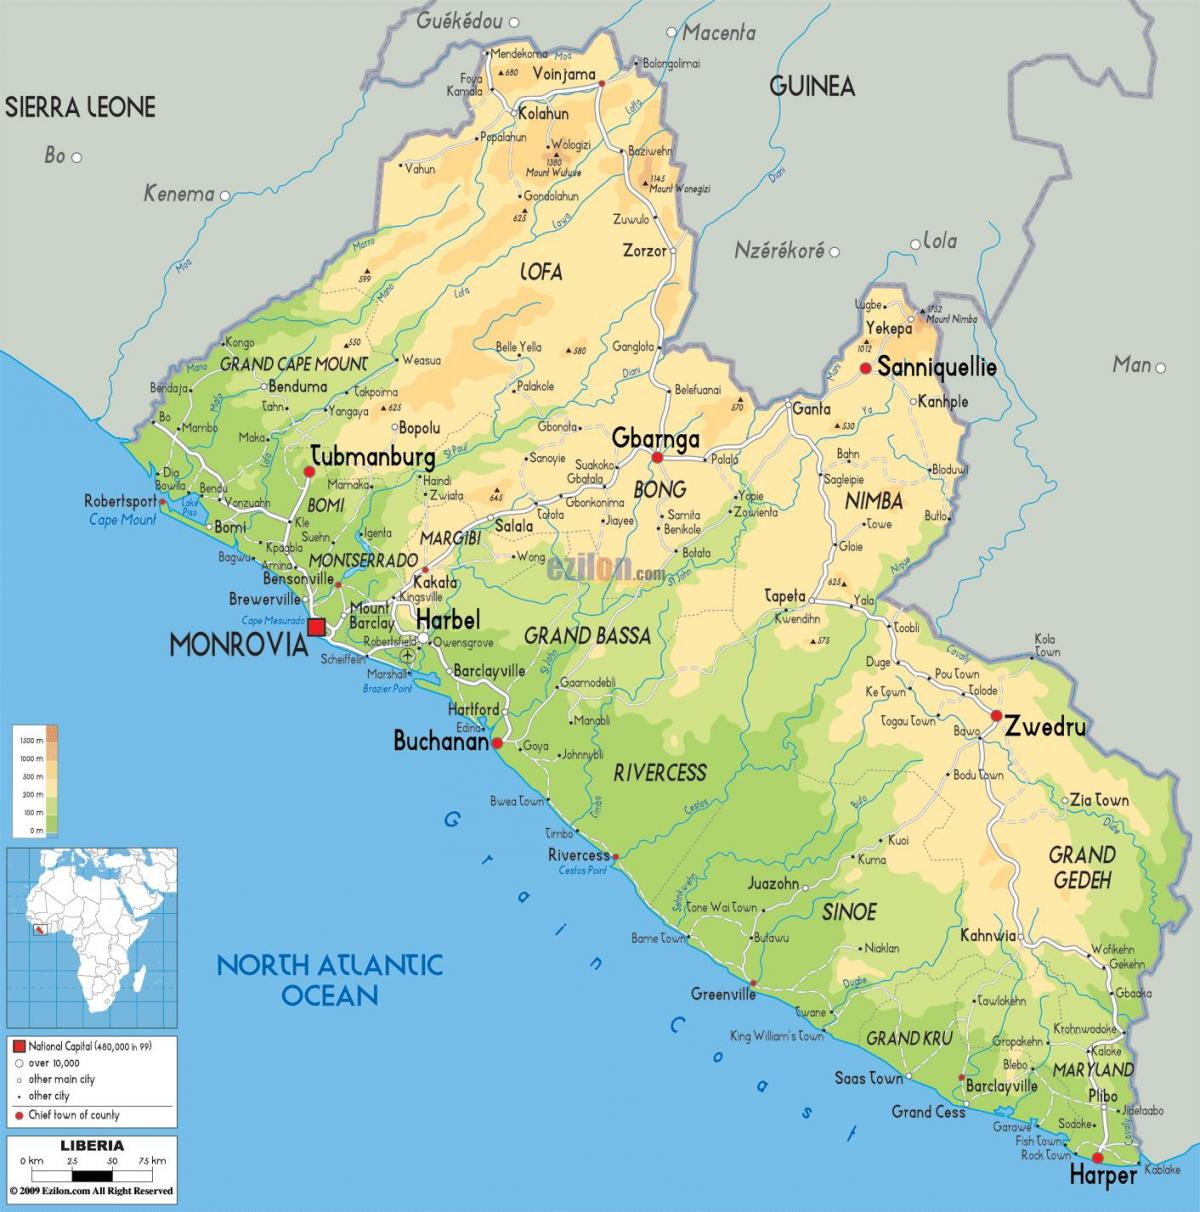 σχεδιάστε το χάρτη της Λιβερίας